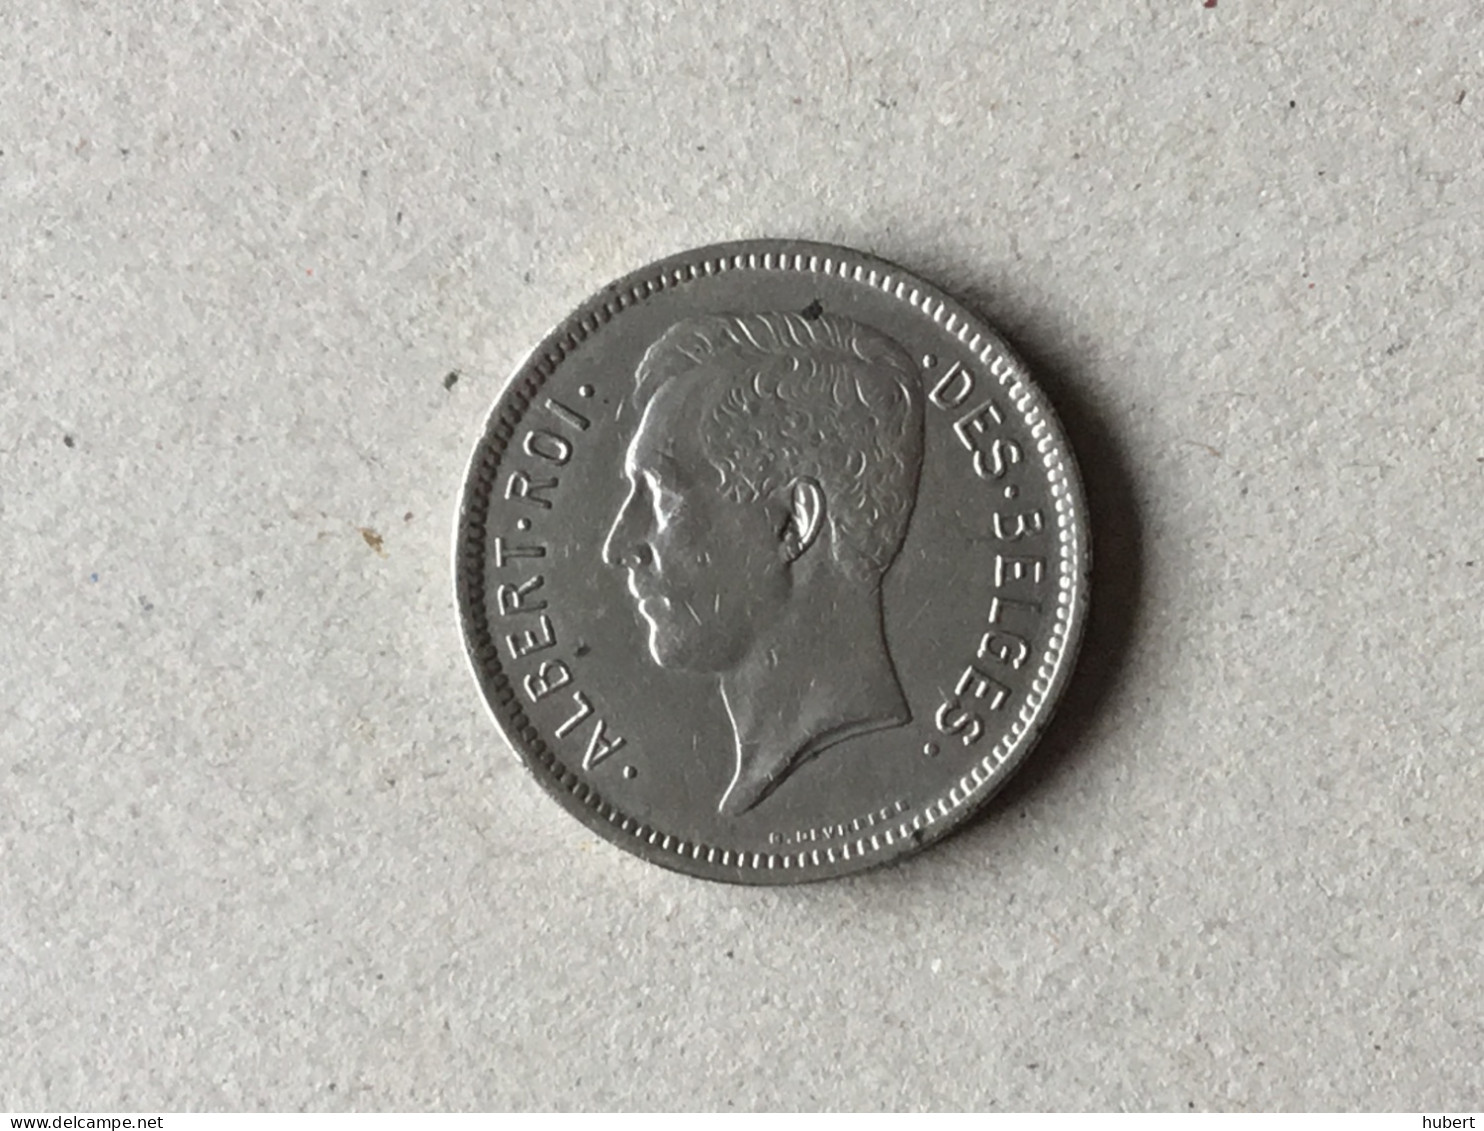 Belgique Albert I 5 Francs Un Belga 1931 - 5 Francs & 1 Belga